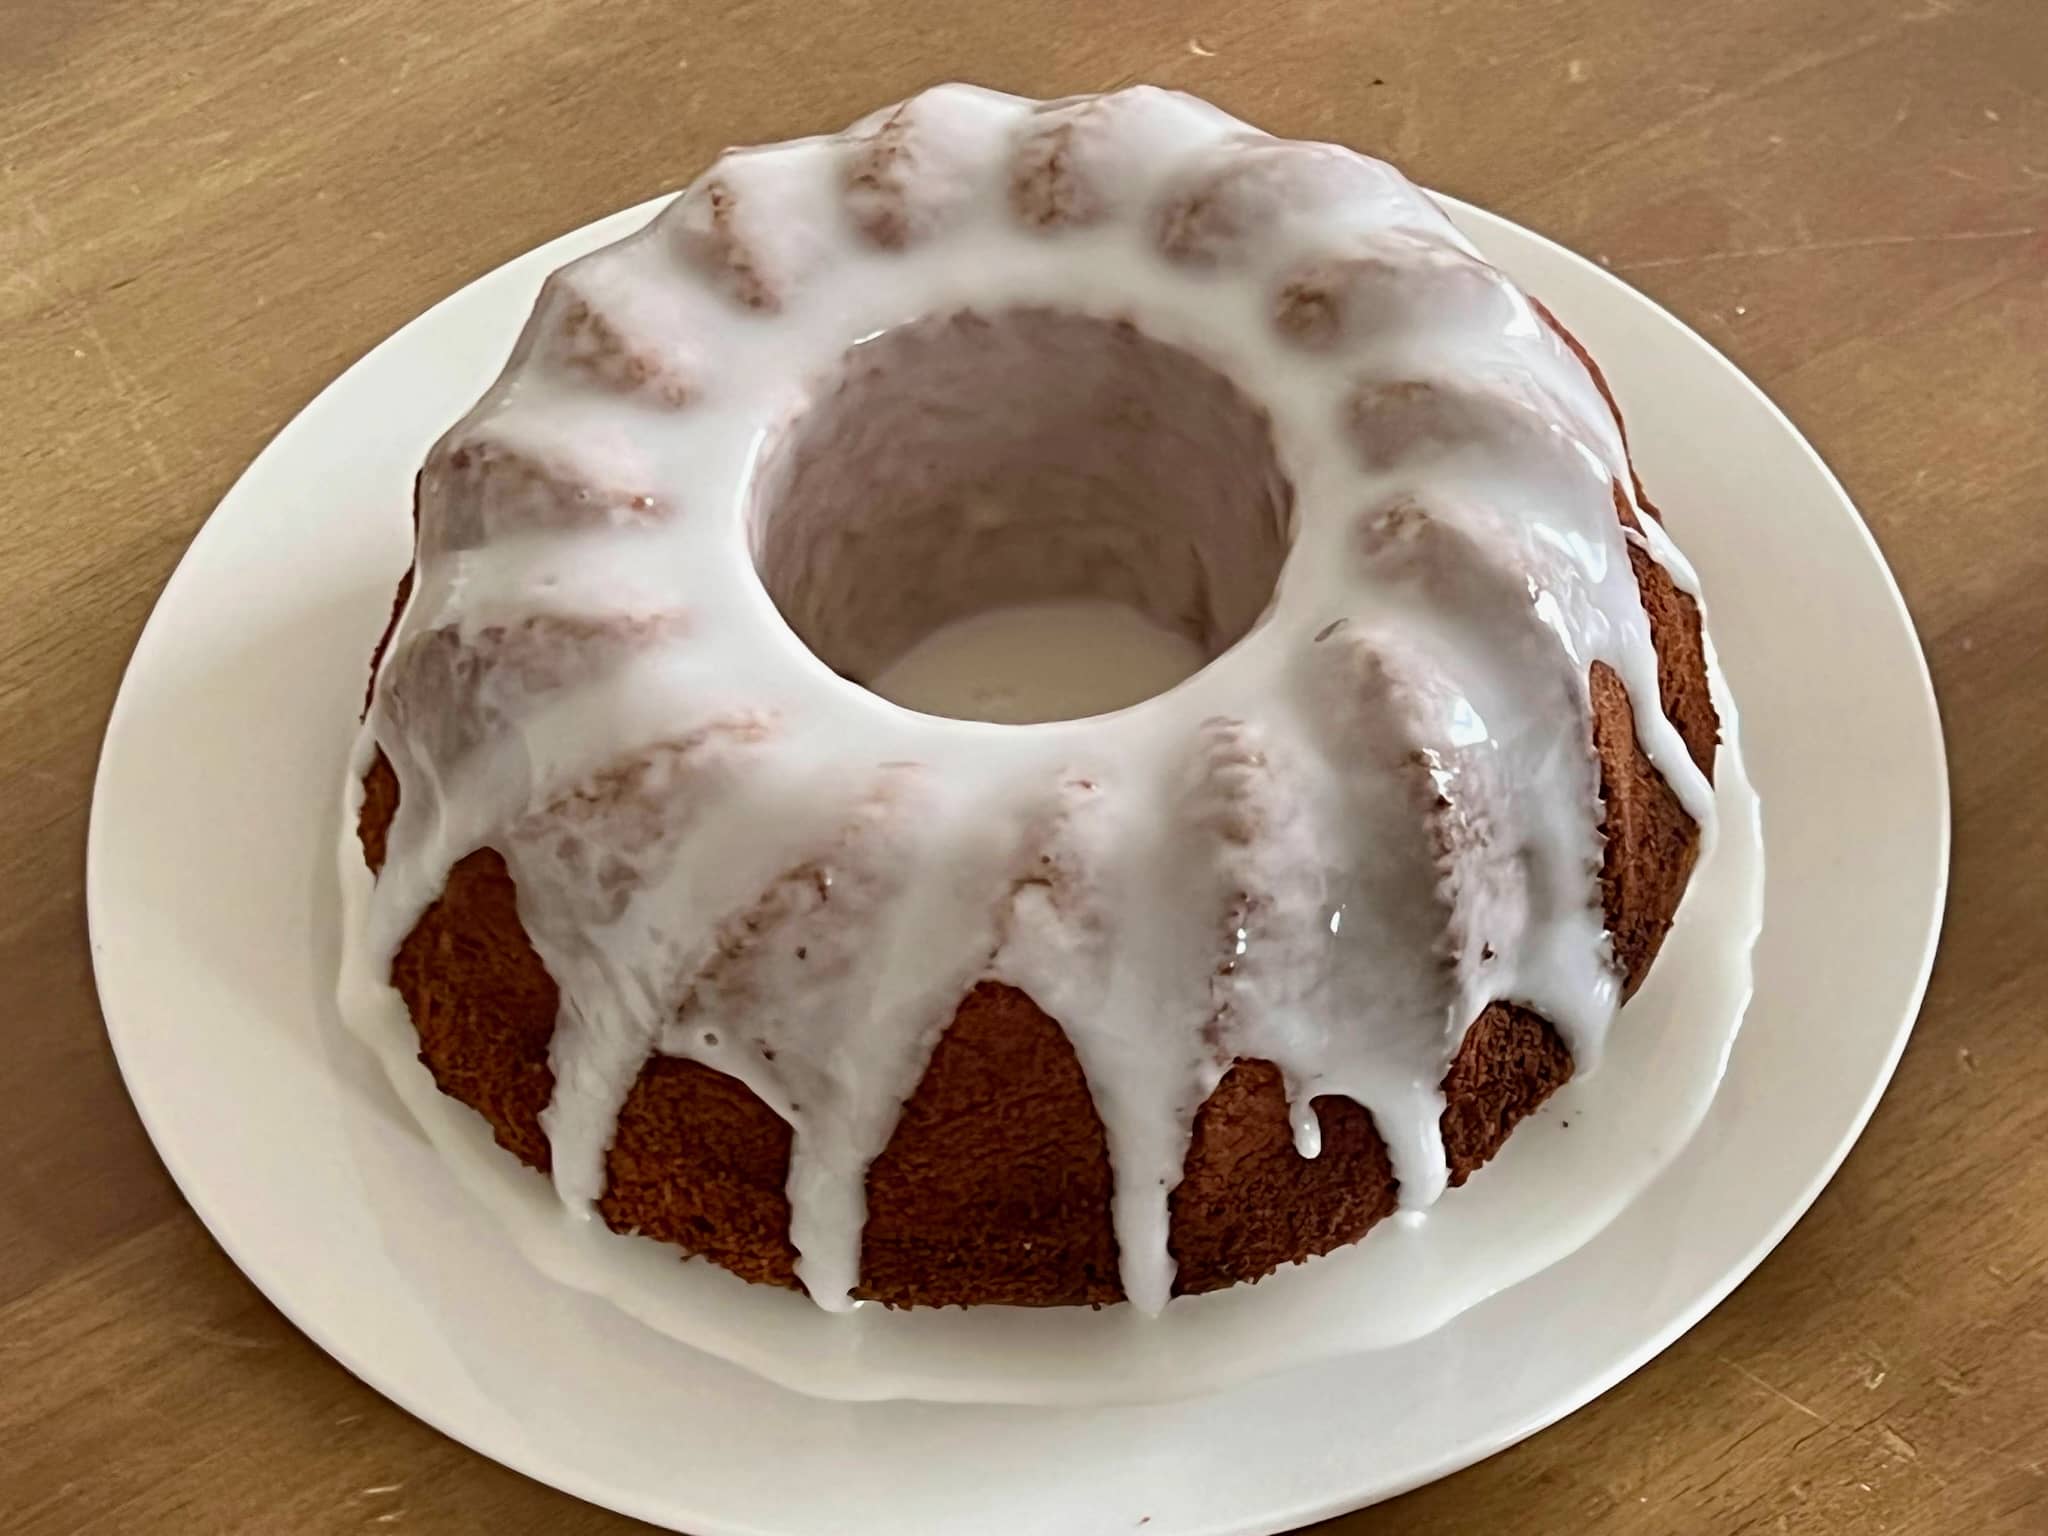 Babka cytrynowa – Lemon Bundt Cake – Glazed